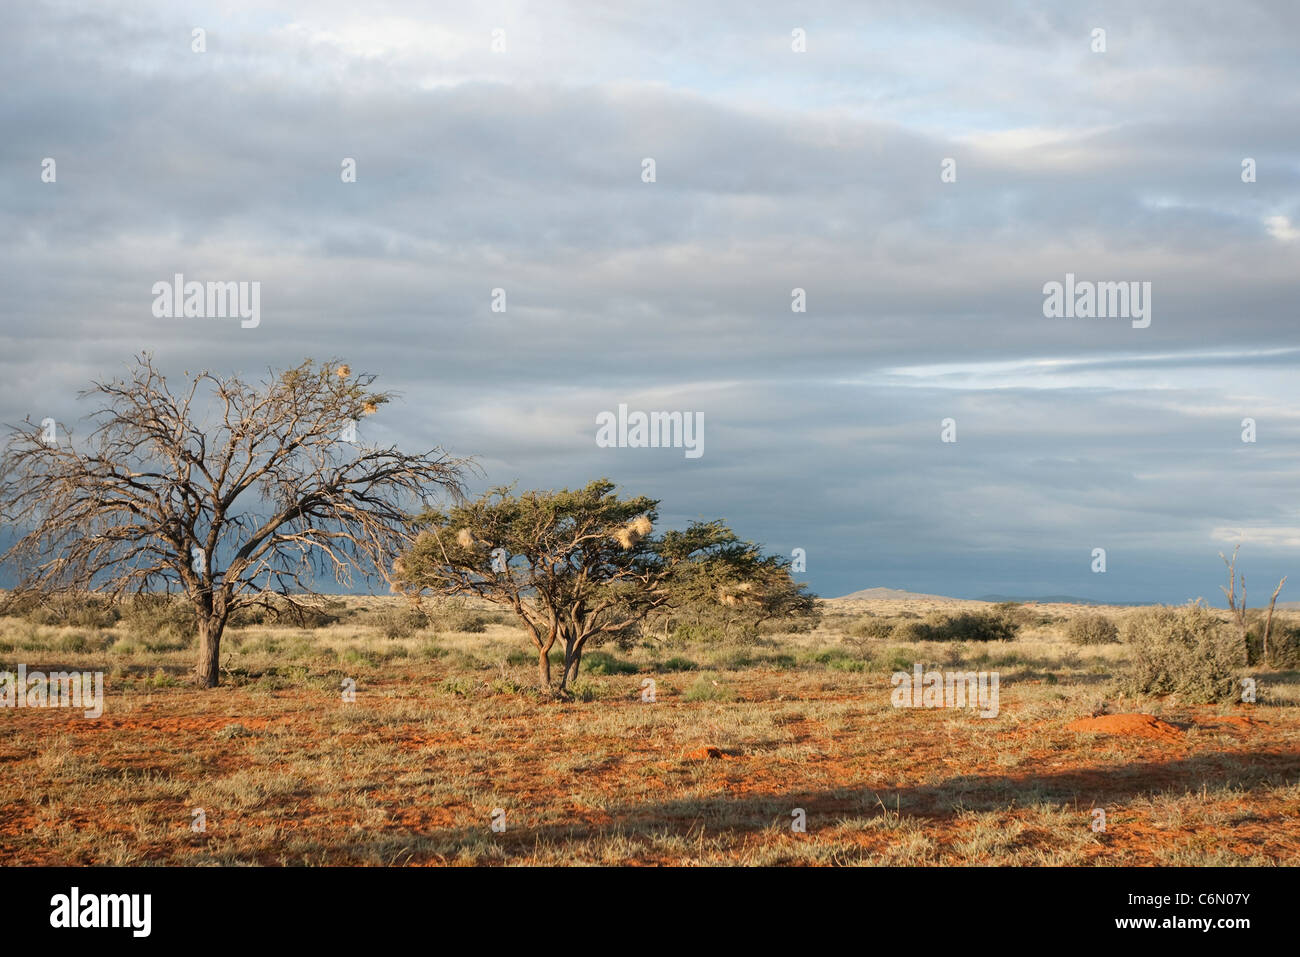 El Kalahari paisaje con árboles y nidos de tejedores comunales Foto de stock